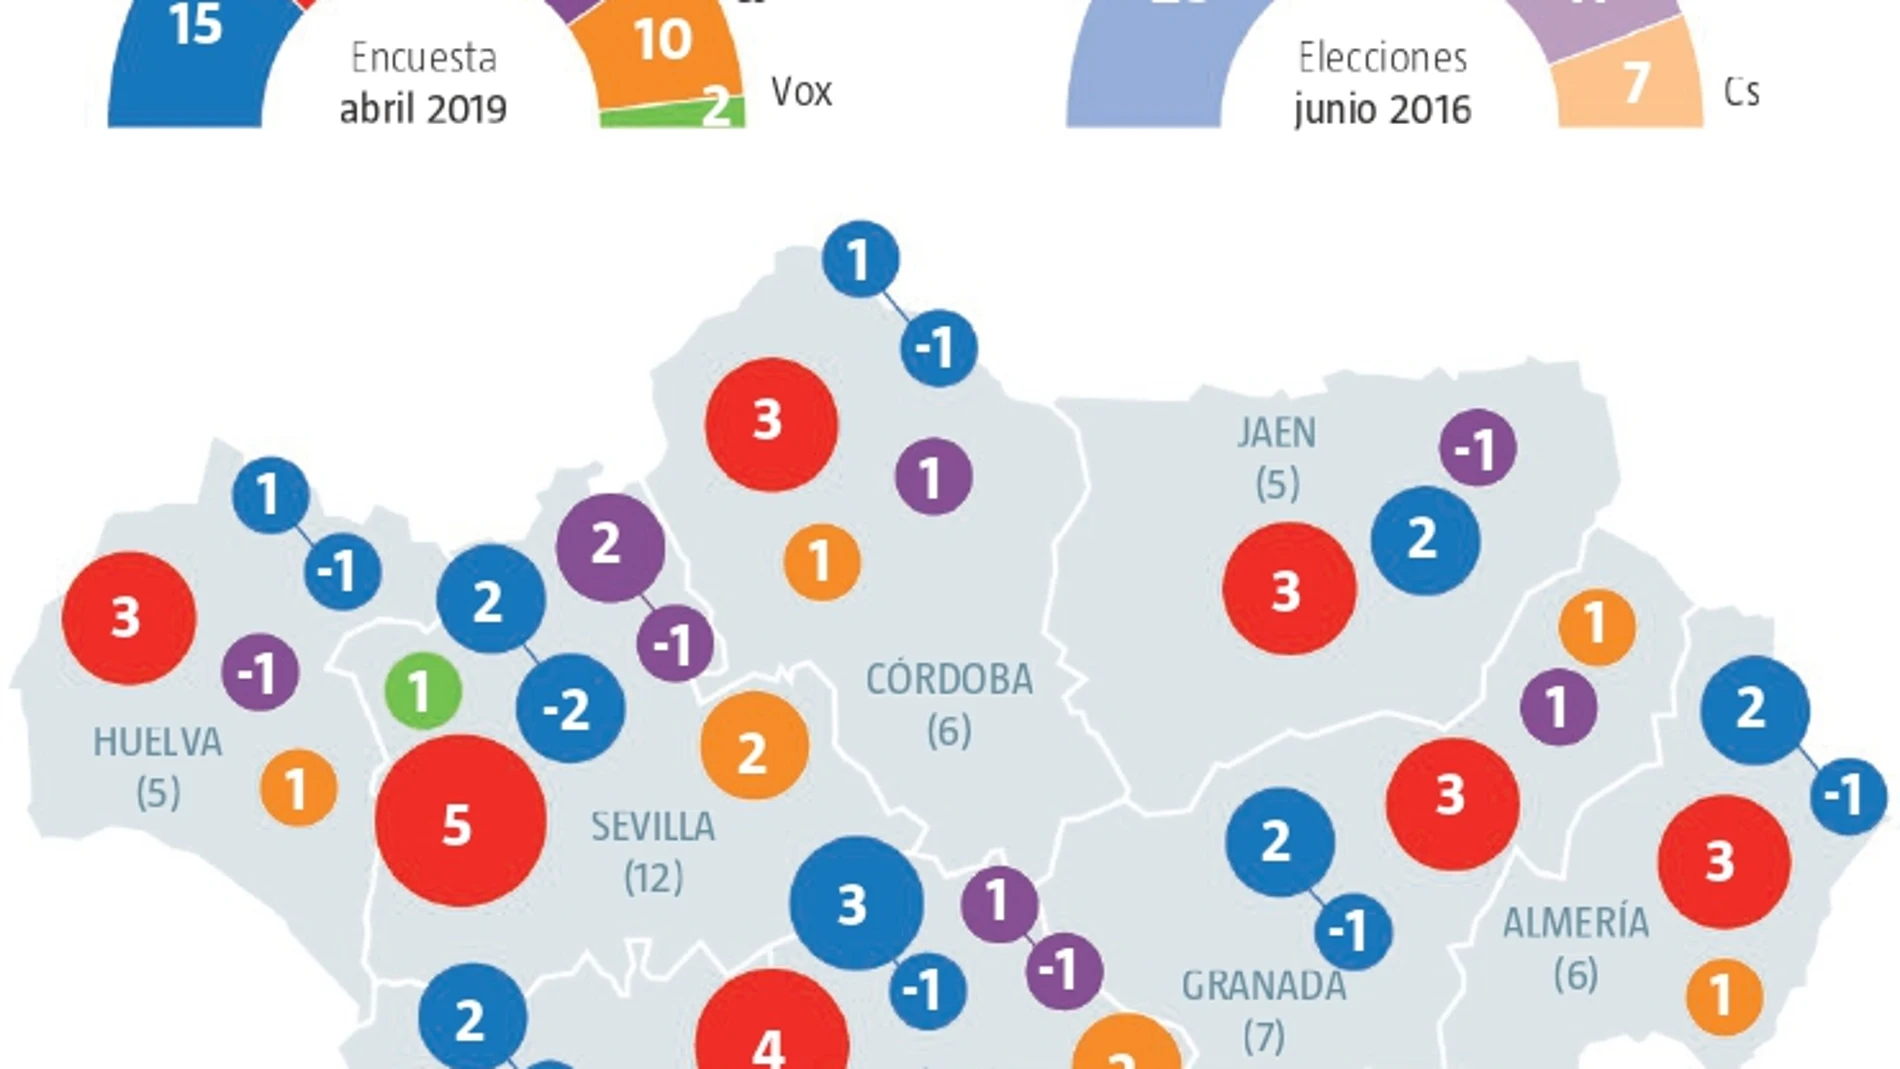 Encuesta electoral Andalucía: El mapa se tiñe de rojo por la división de la derecha